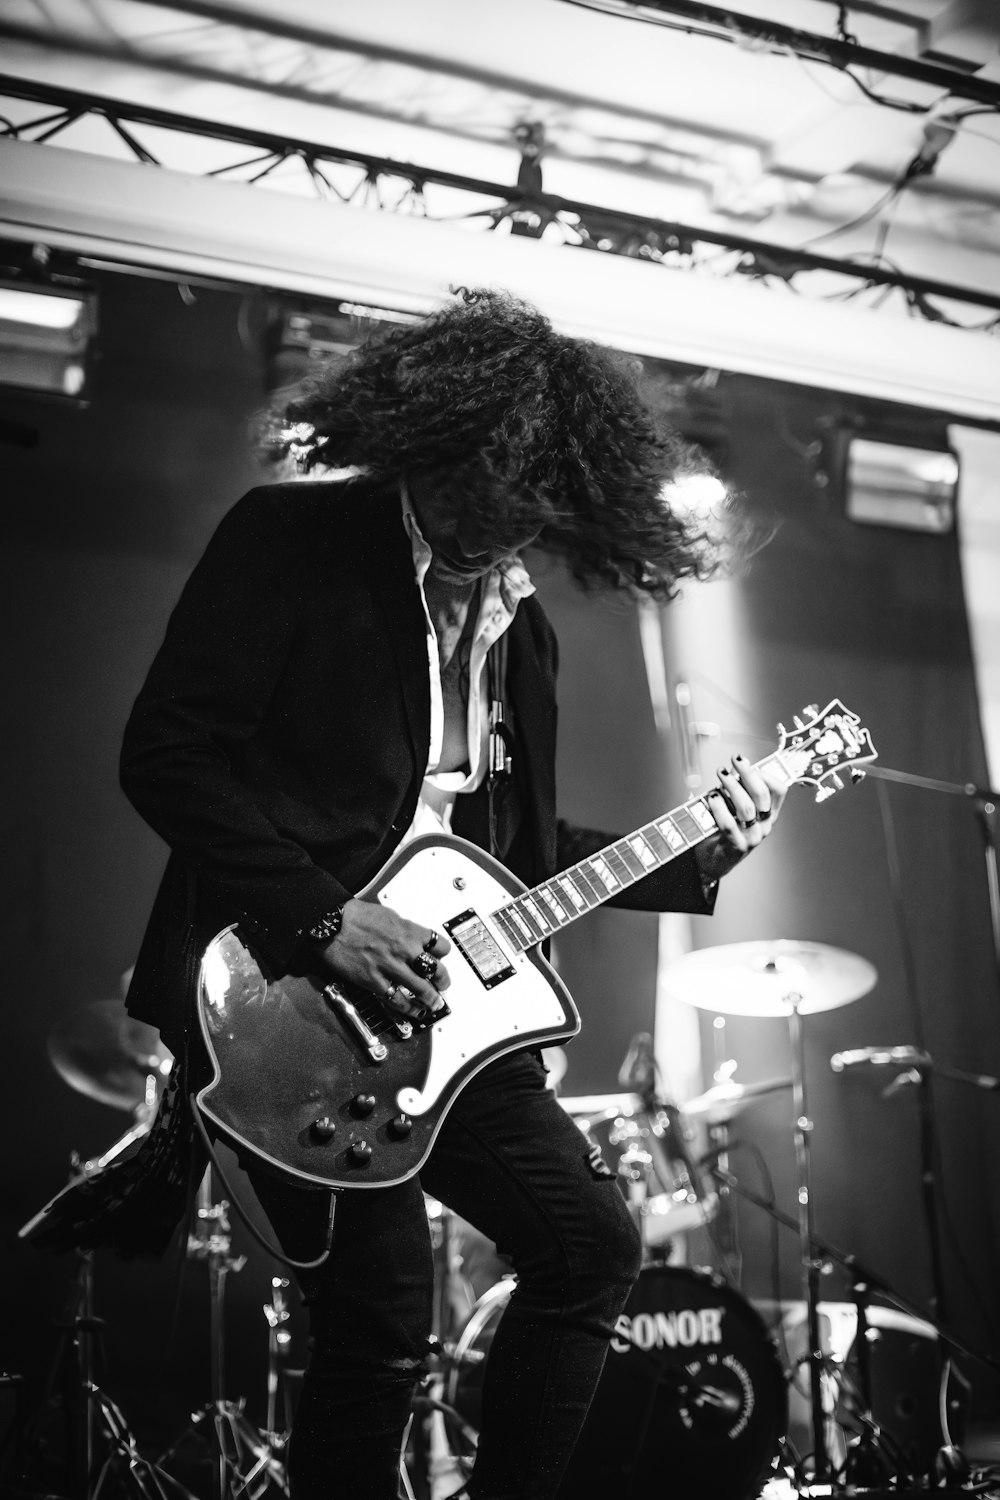 una foto in bianco e nero di un uomo che suona una chitarra